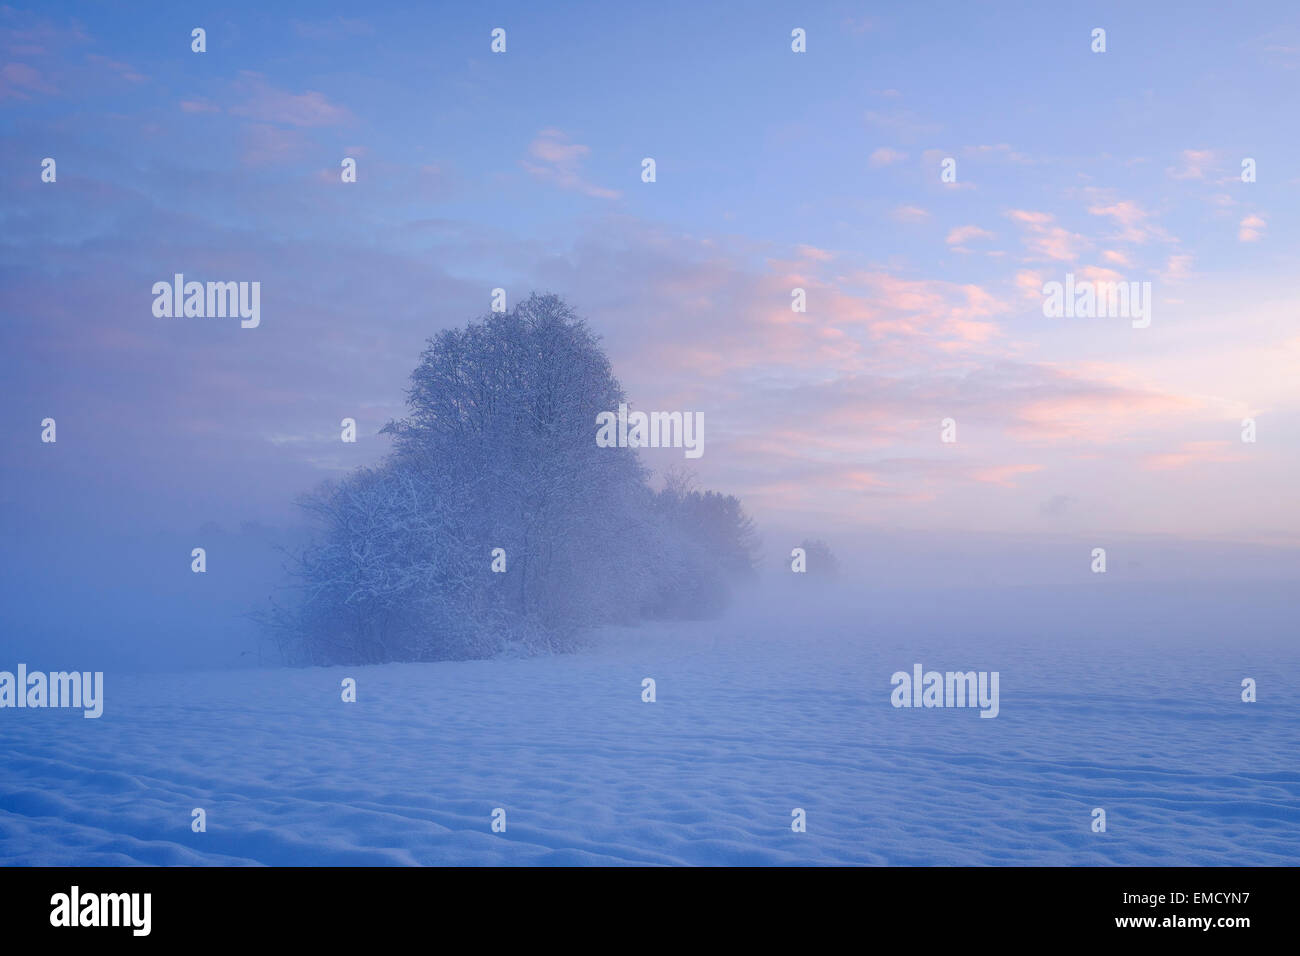 Alemania, Gelting, místico paisaje invernal a la luz de la mañana Foto de stock